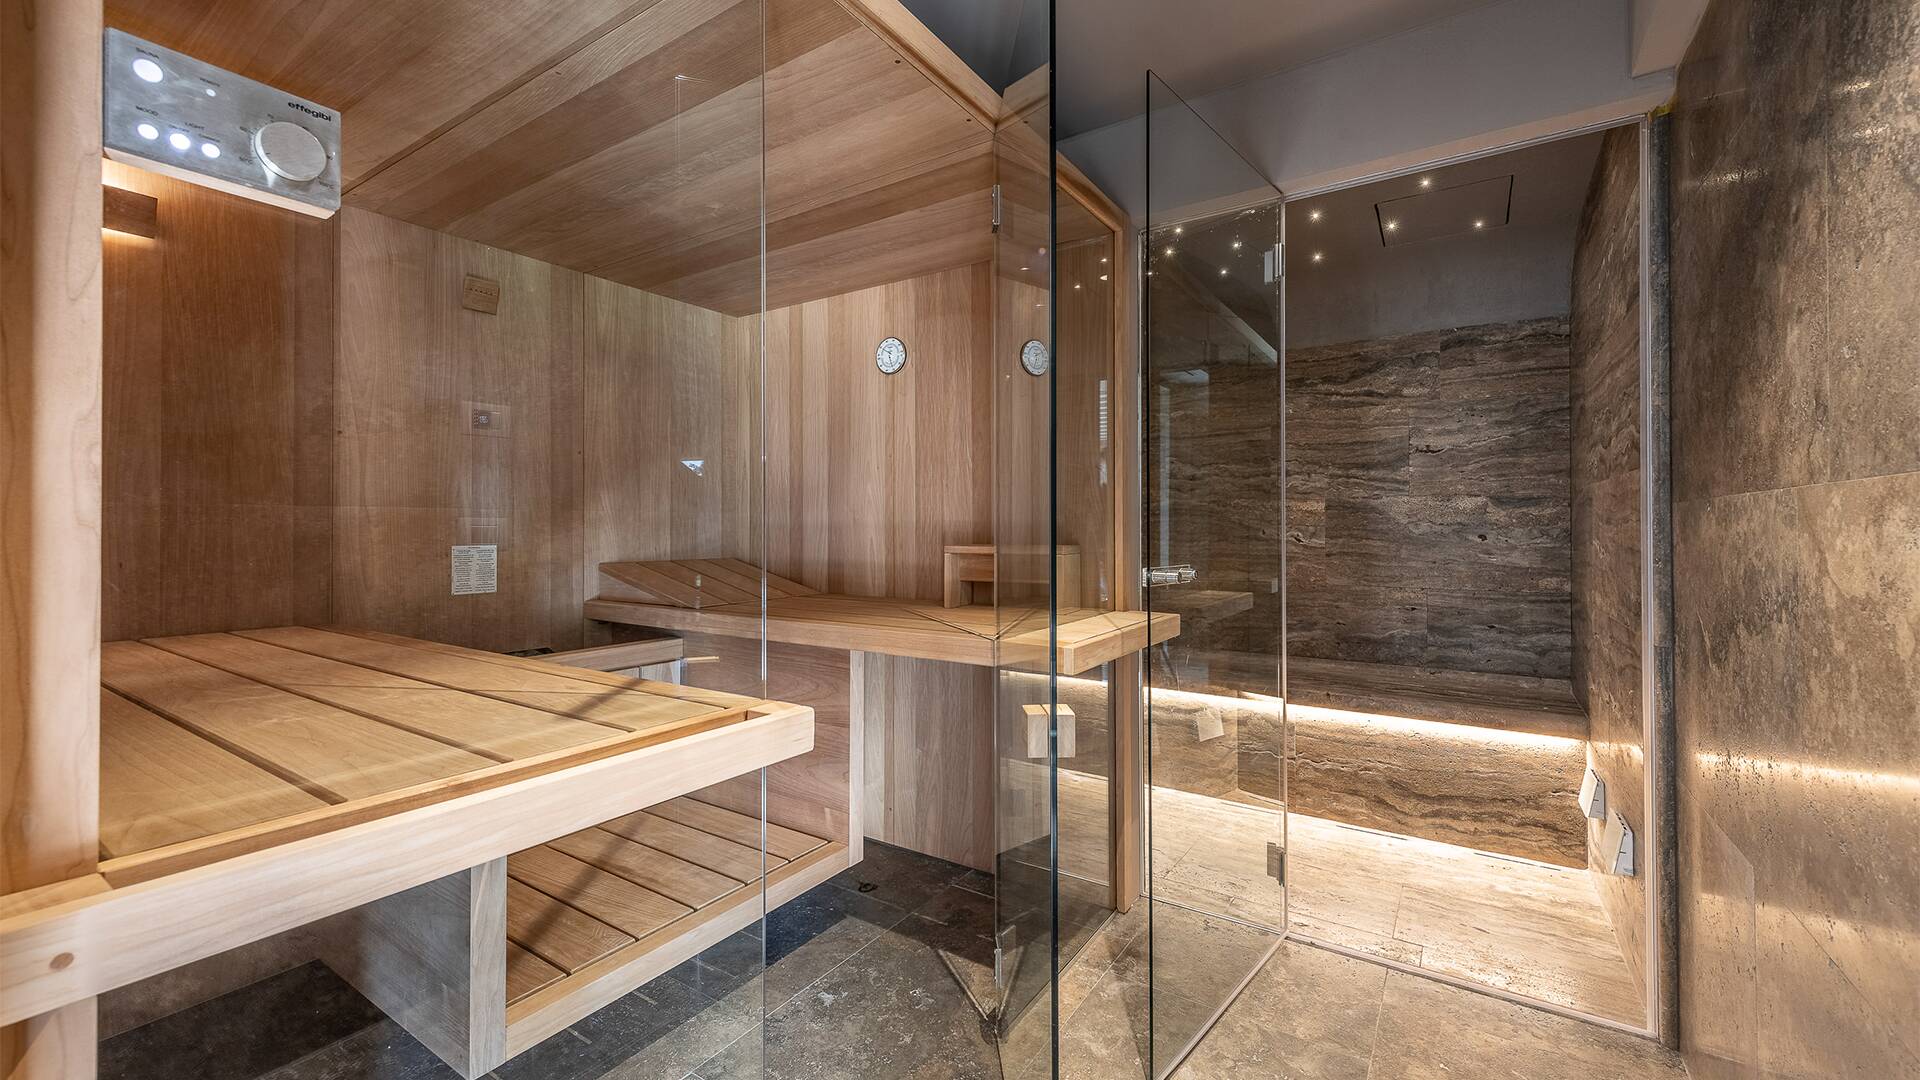 Turkish bath and sauna